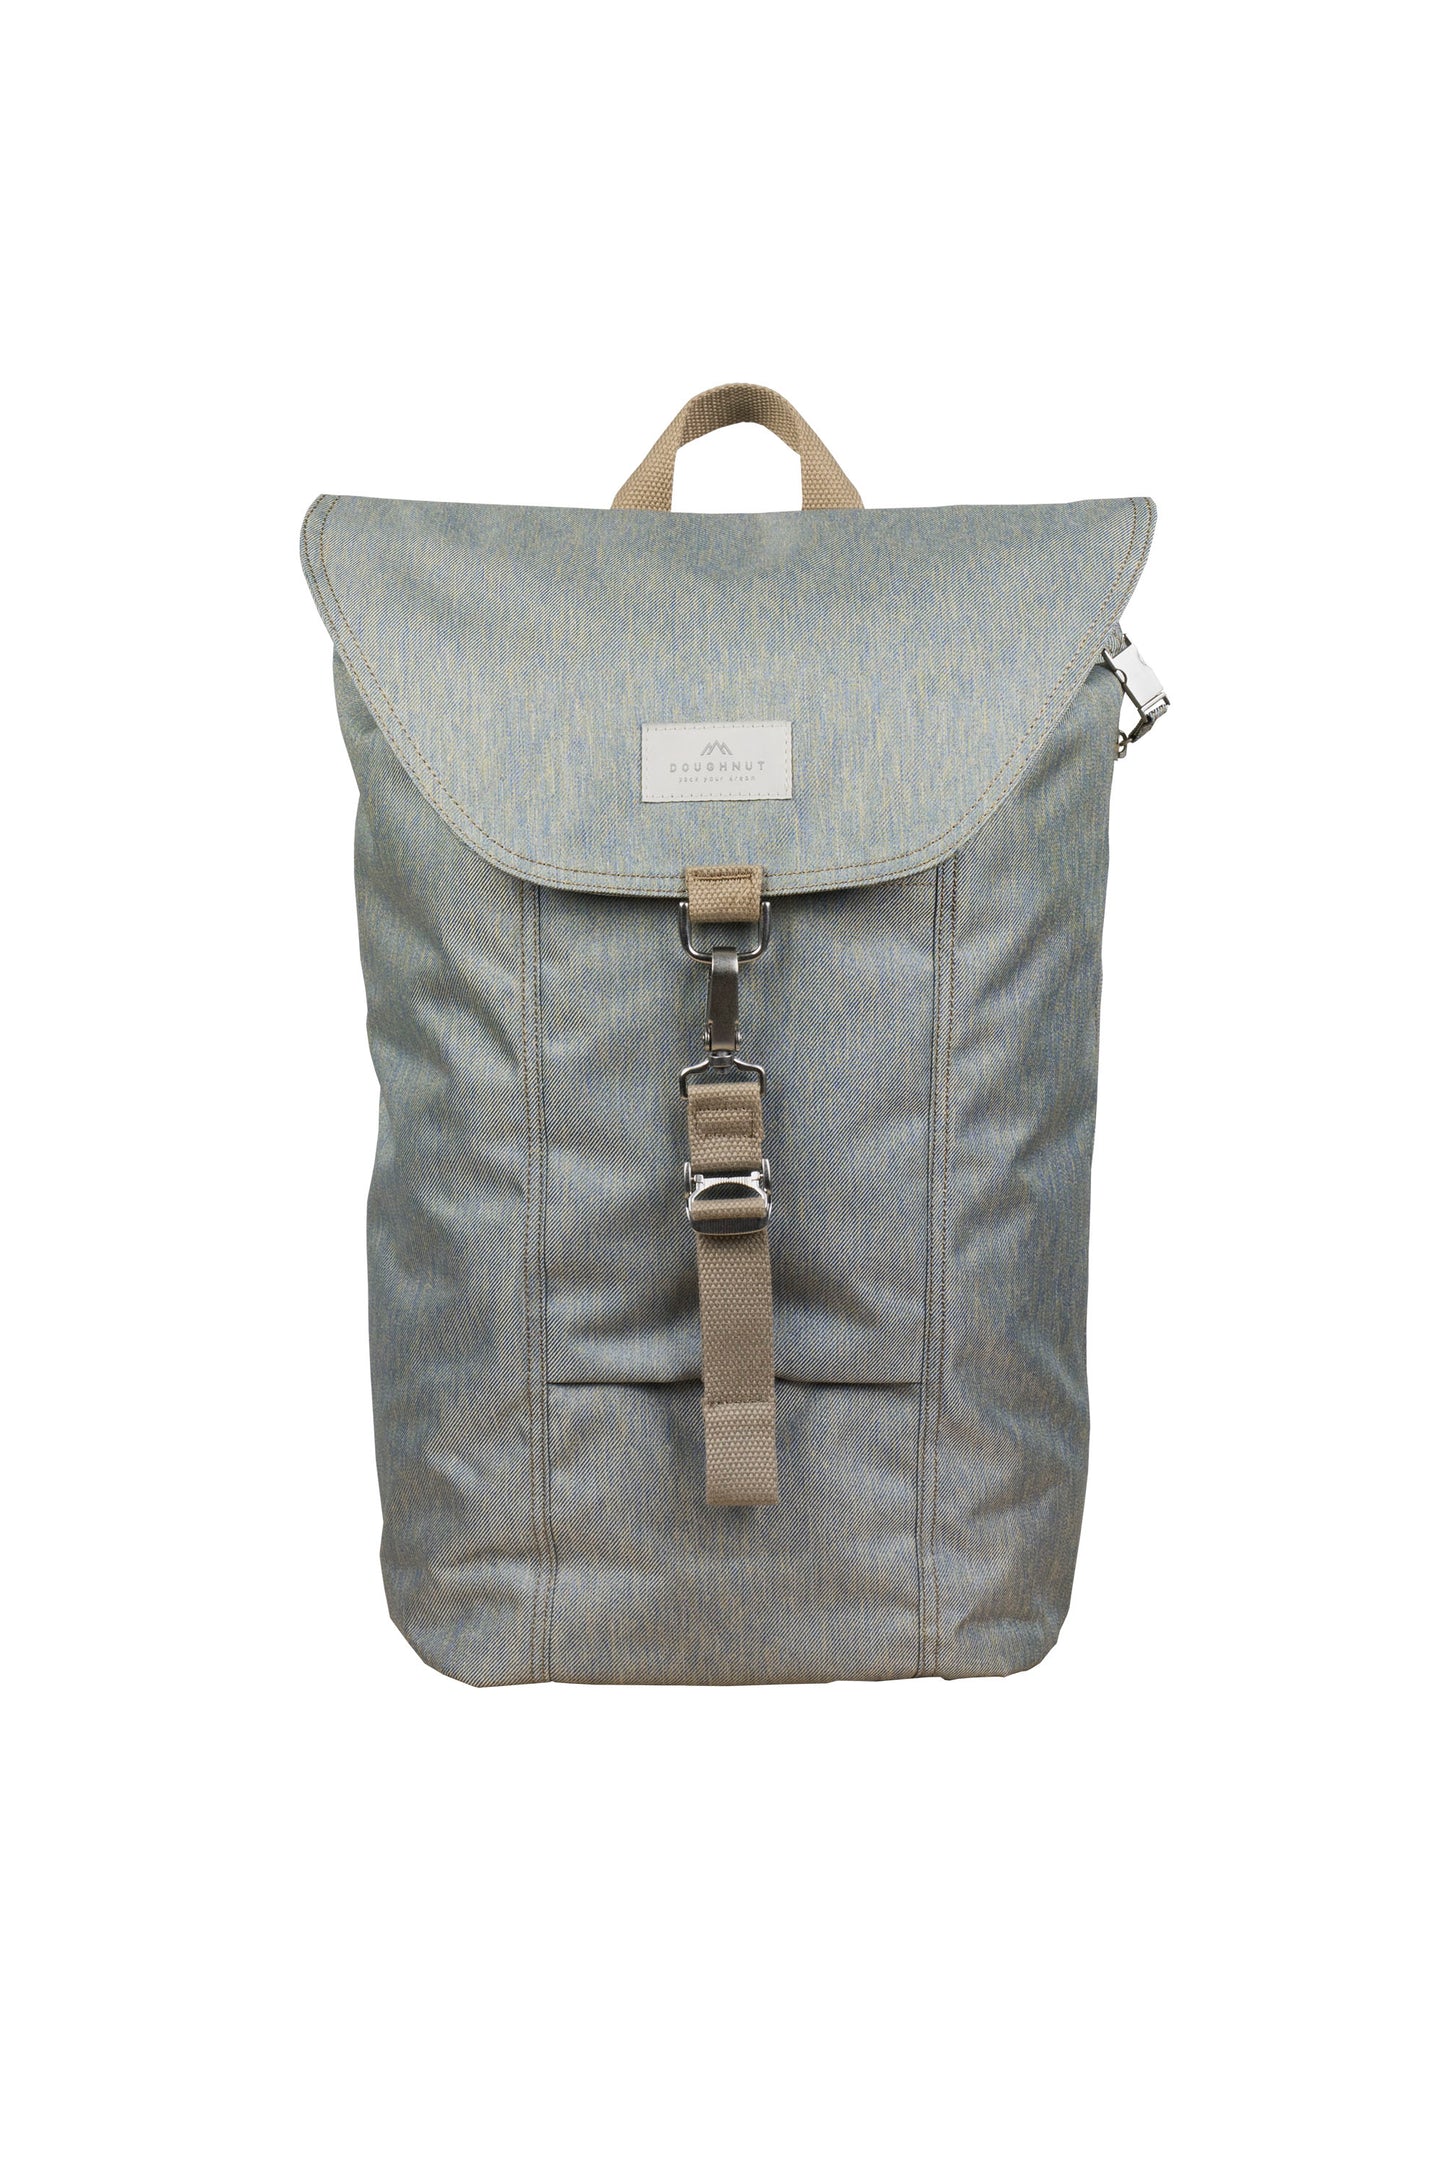 Plato Light Grey Backpack